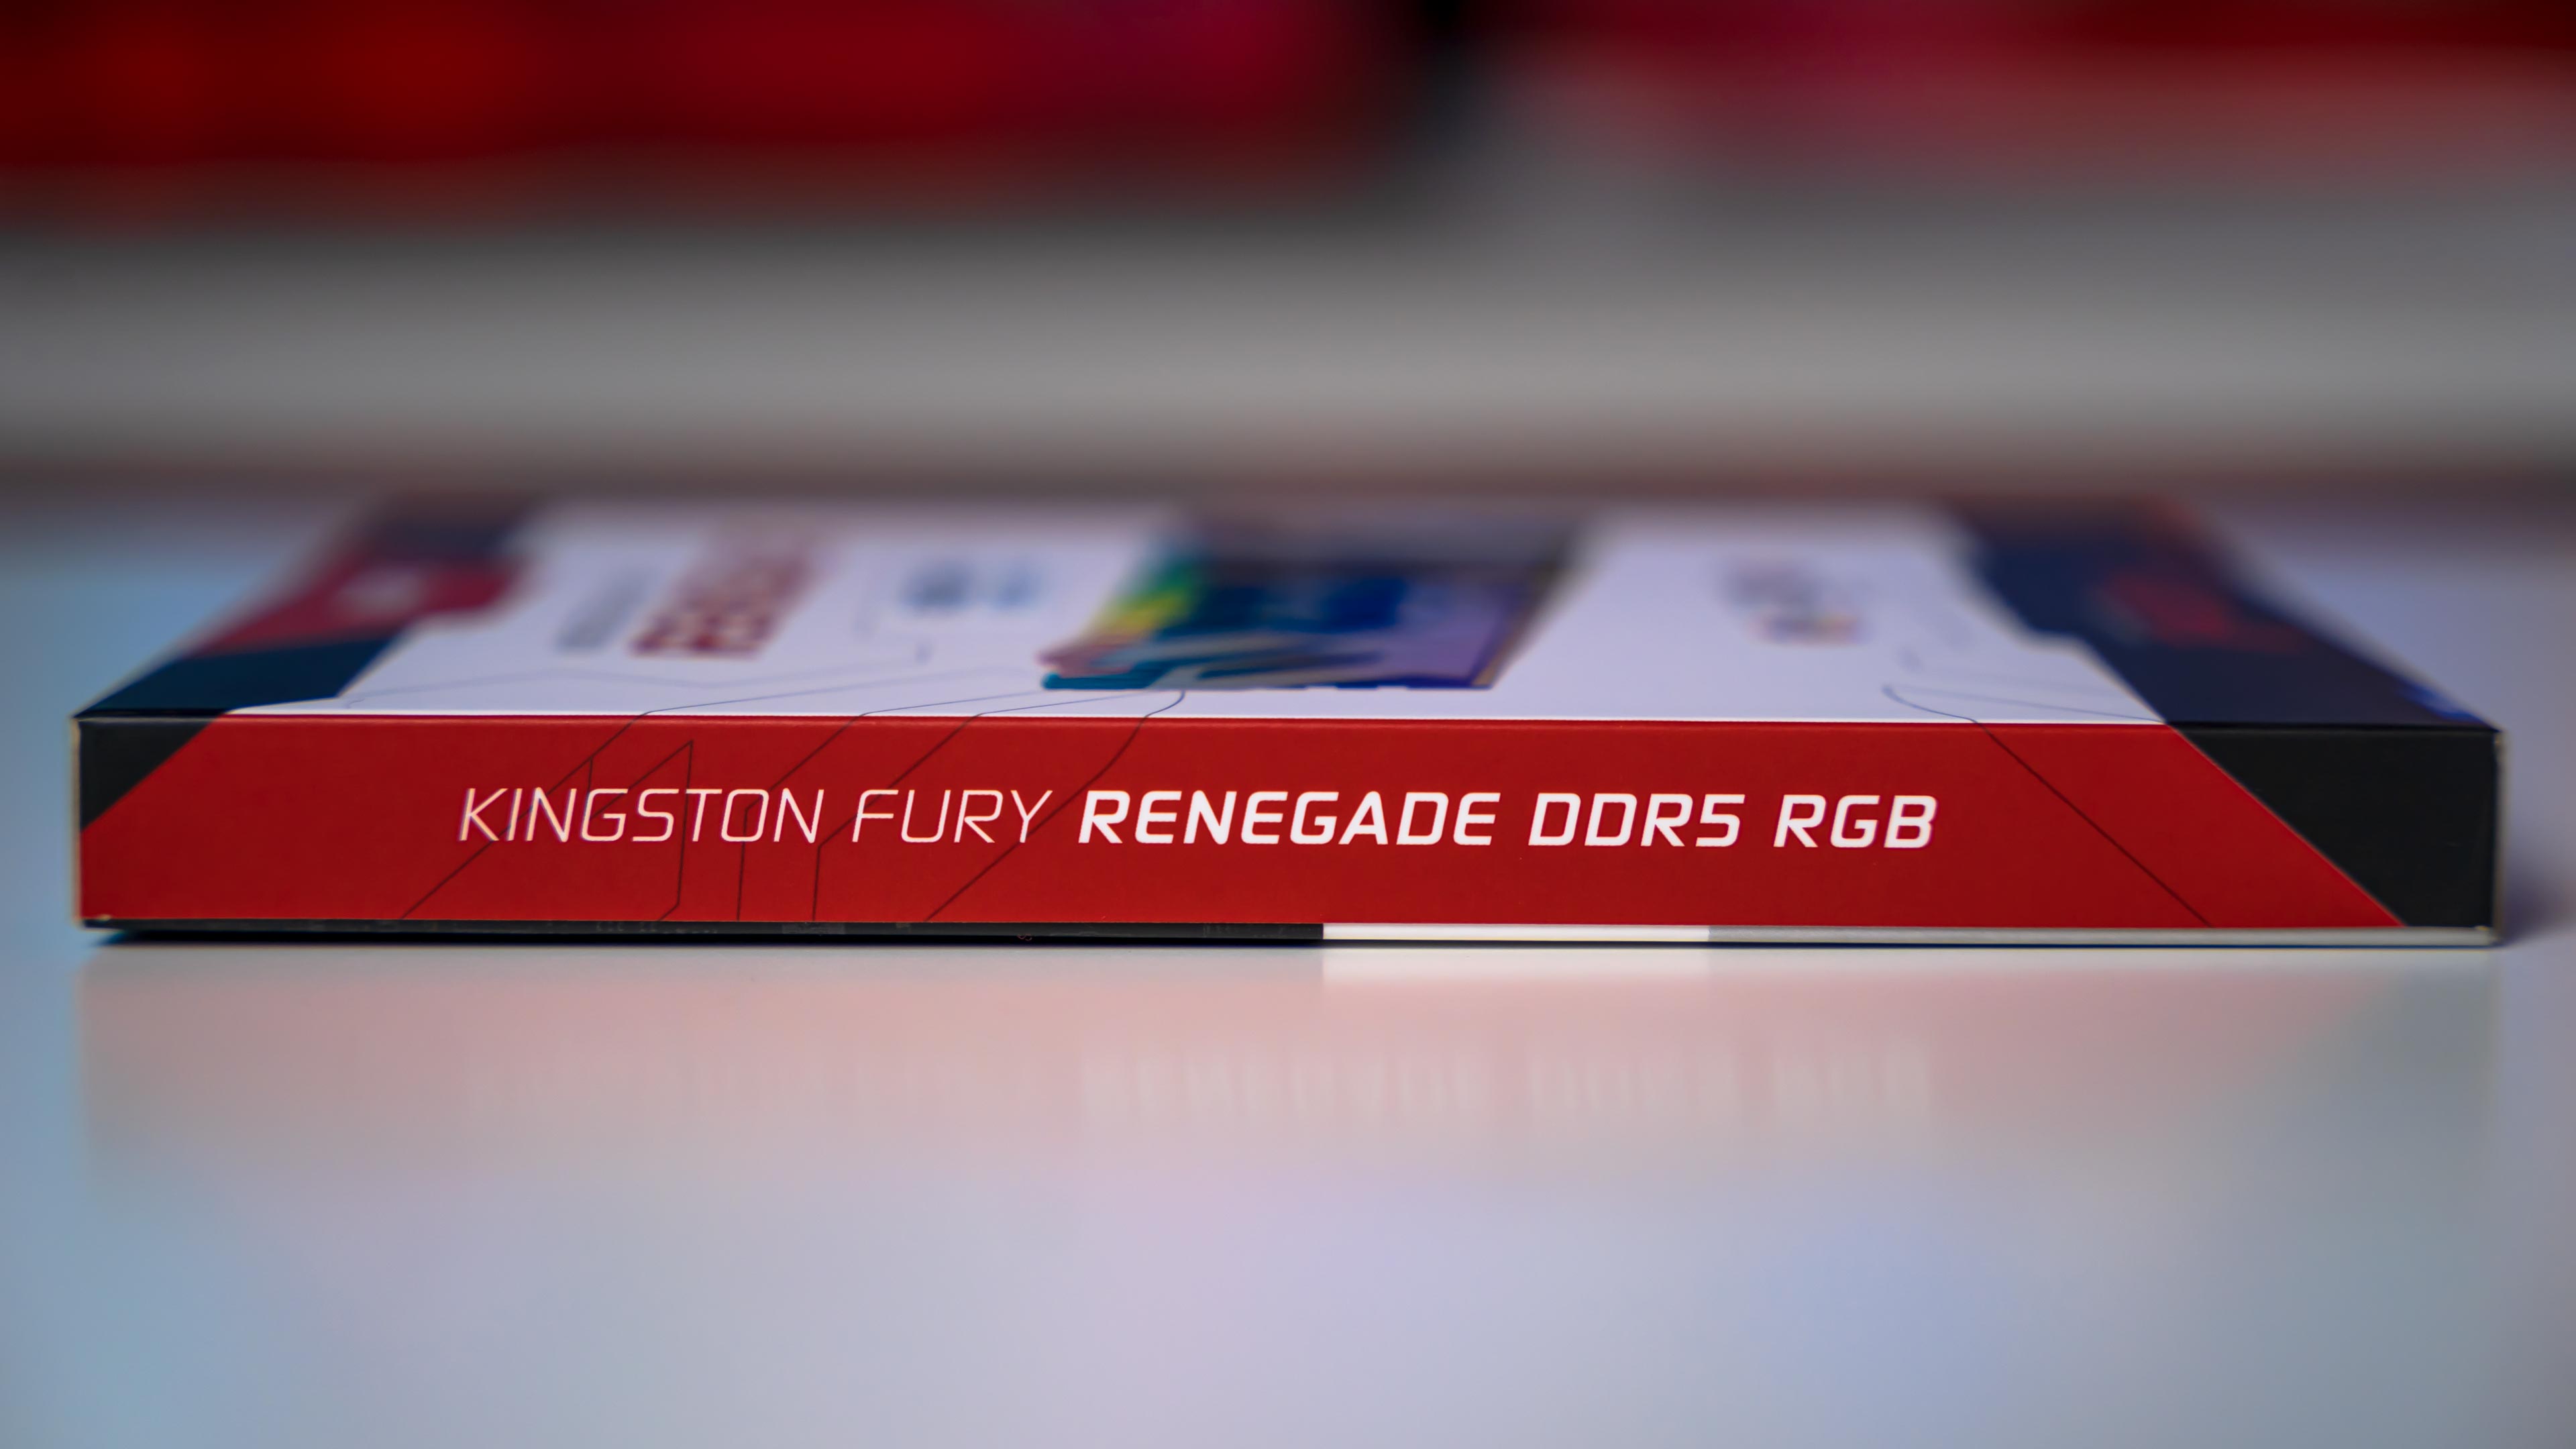 Kingston Fury Renegade RGB DDR5 6400MHz 2x48GB Box (5)